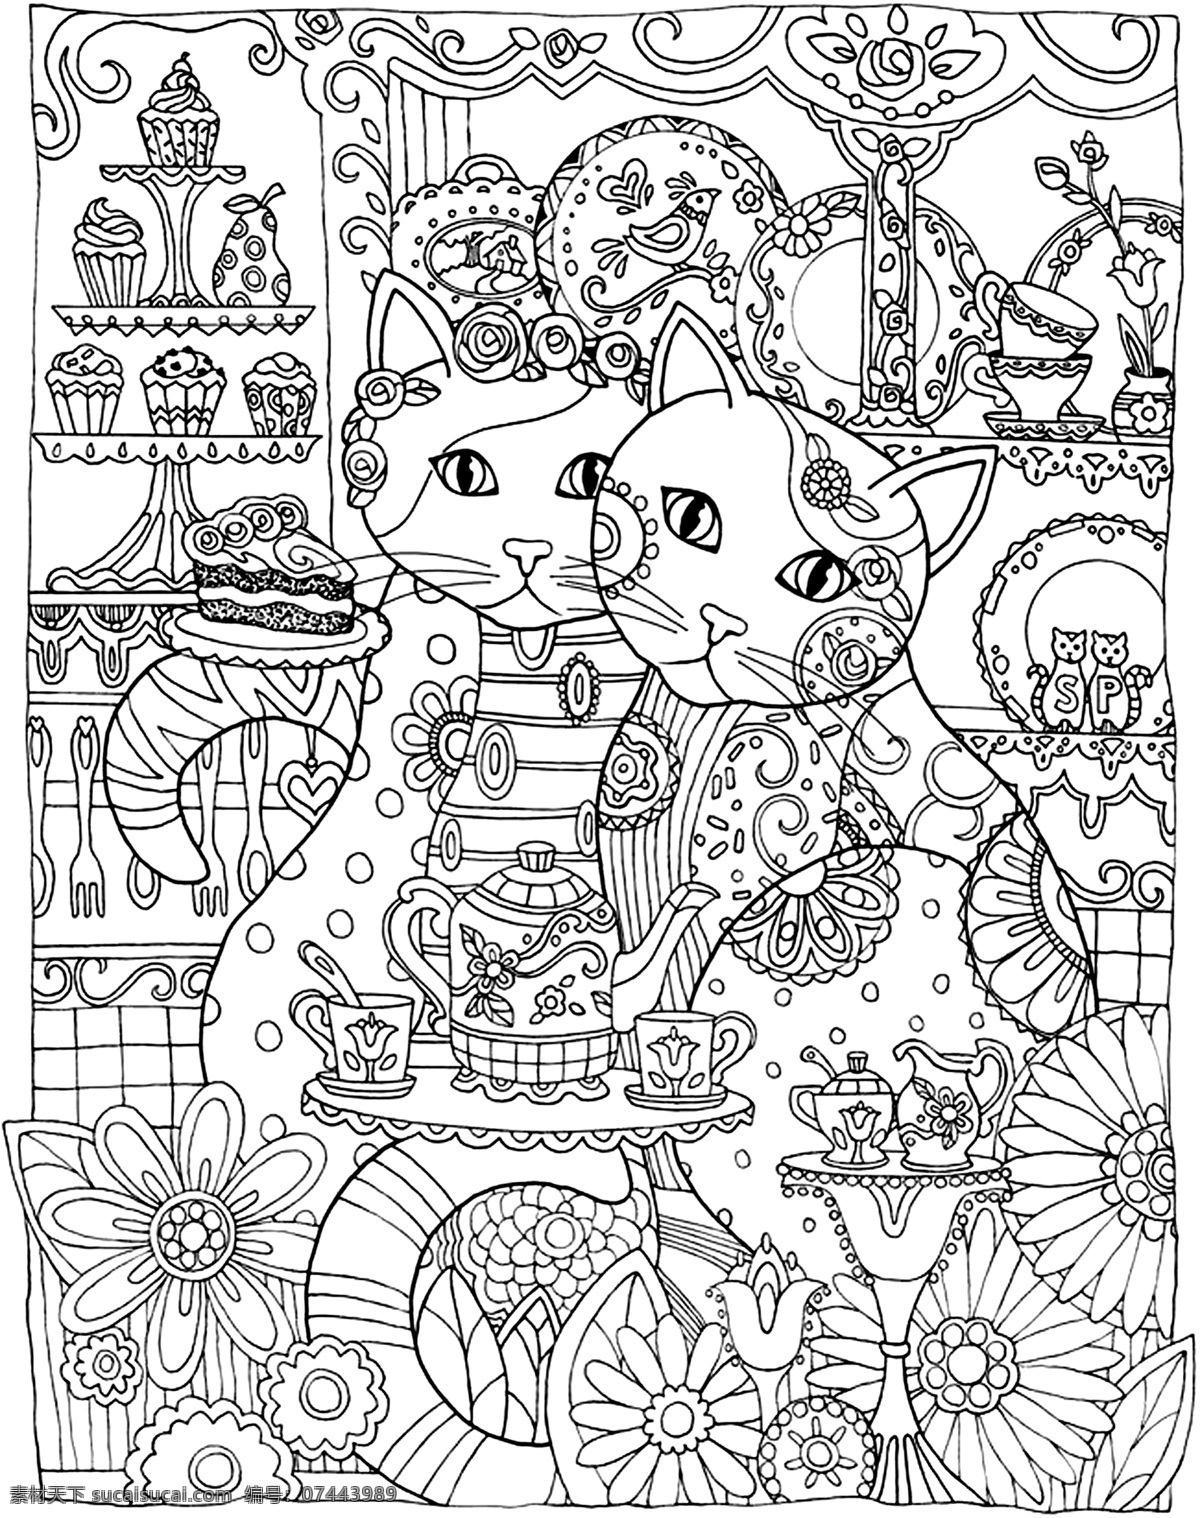 秘密花园 填色卡 猫 鸟 蛋糕 茶壶 简笔画 小学生 绘画 文化艺术 绘画书法